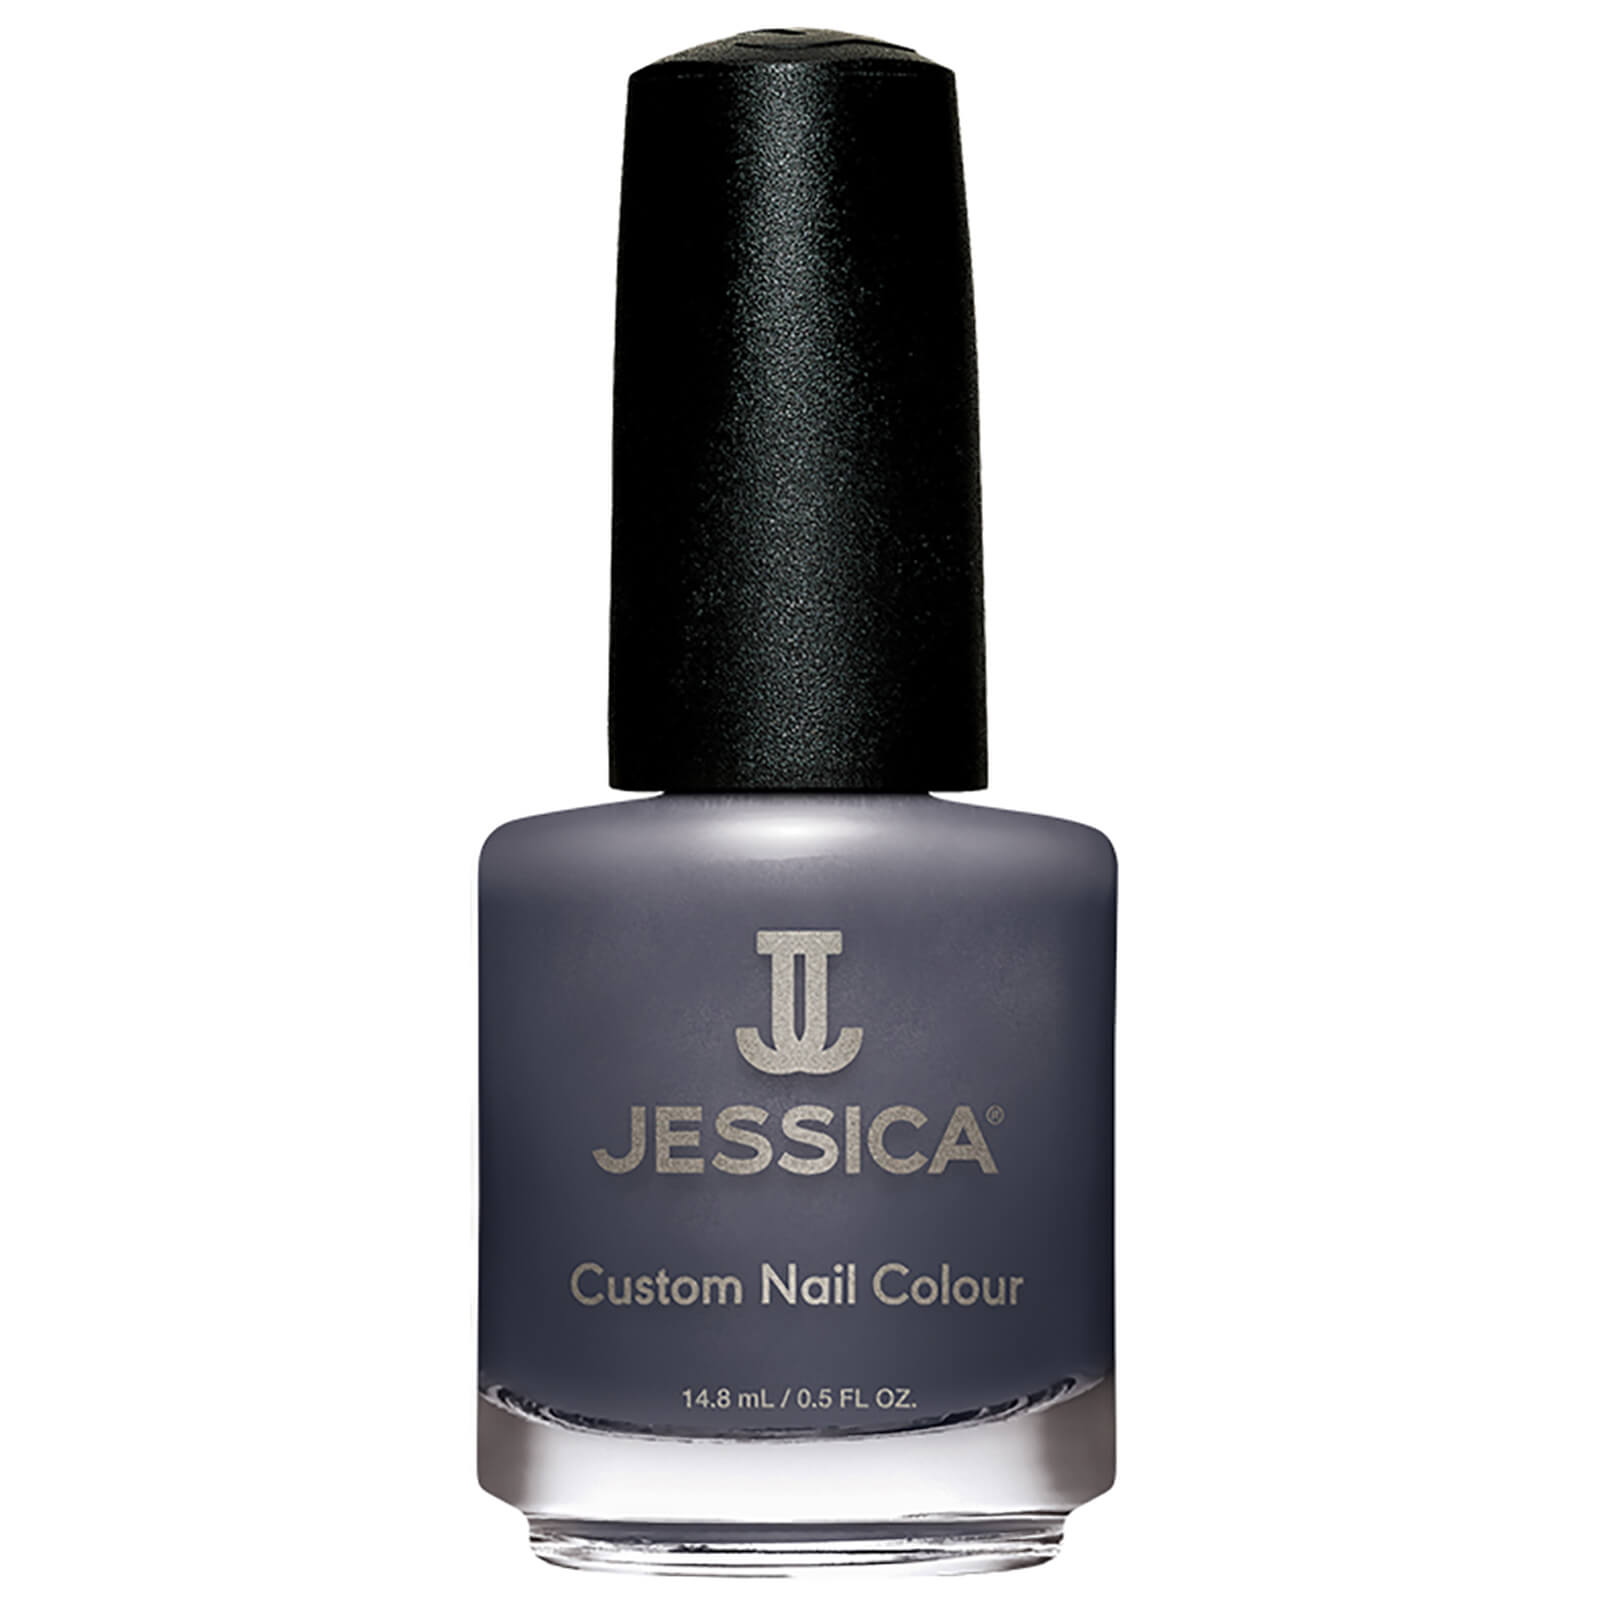 Esmalte de uñas Custom Nail Colour de Jessica - Deliciously Distressed